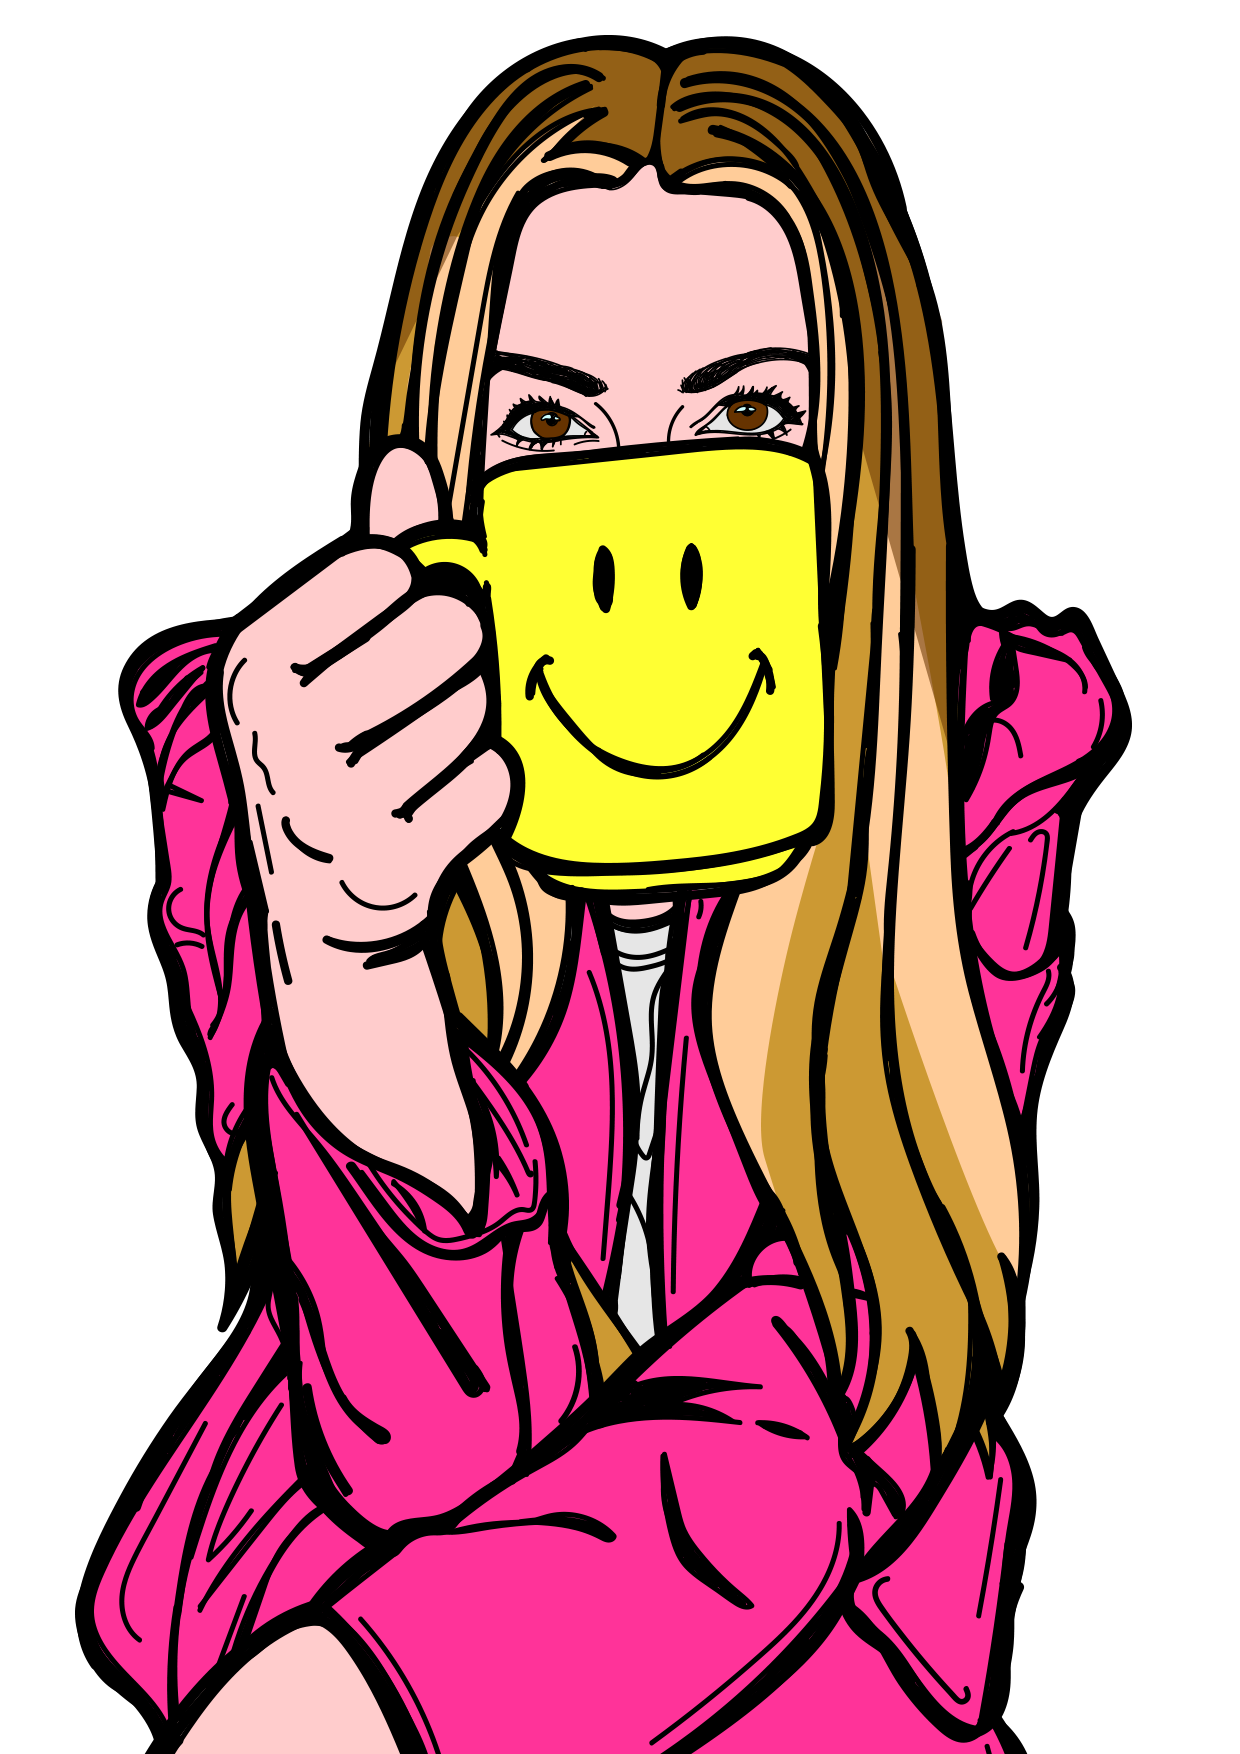 Illustration of Jess Zevaka holding a yellow smiley face mug